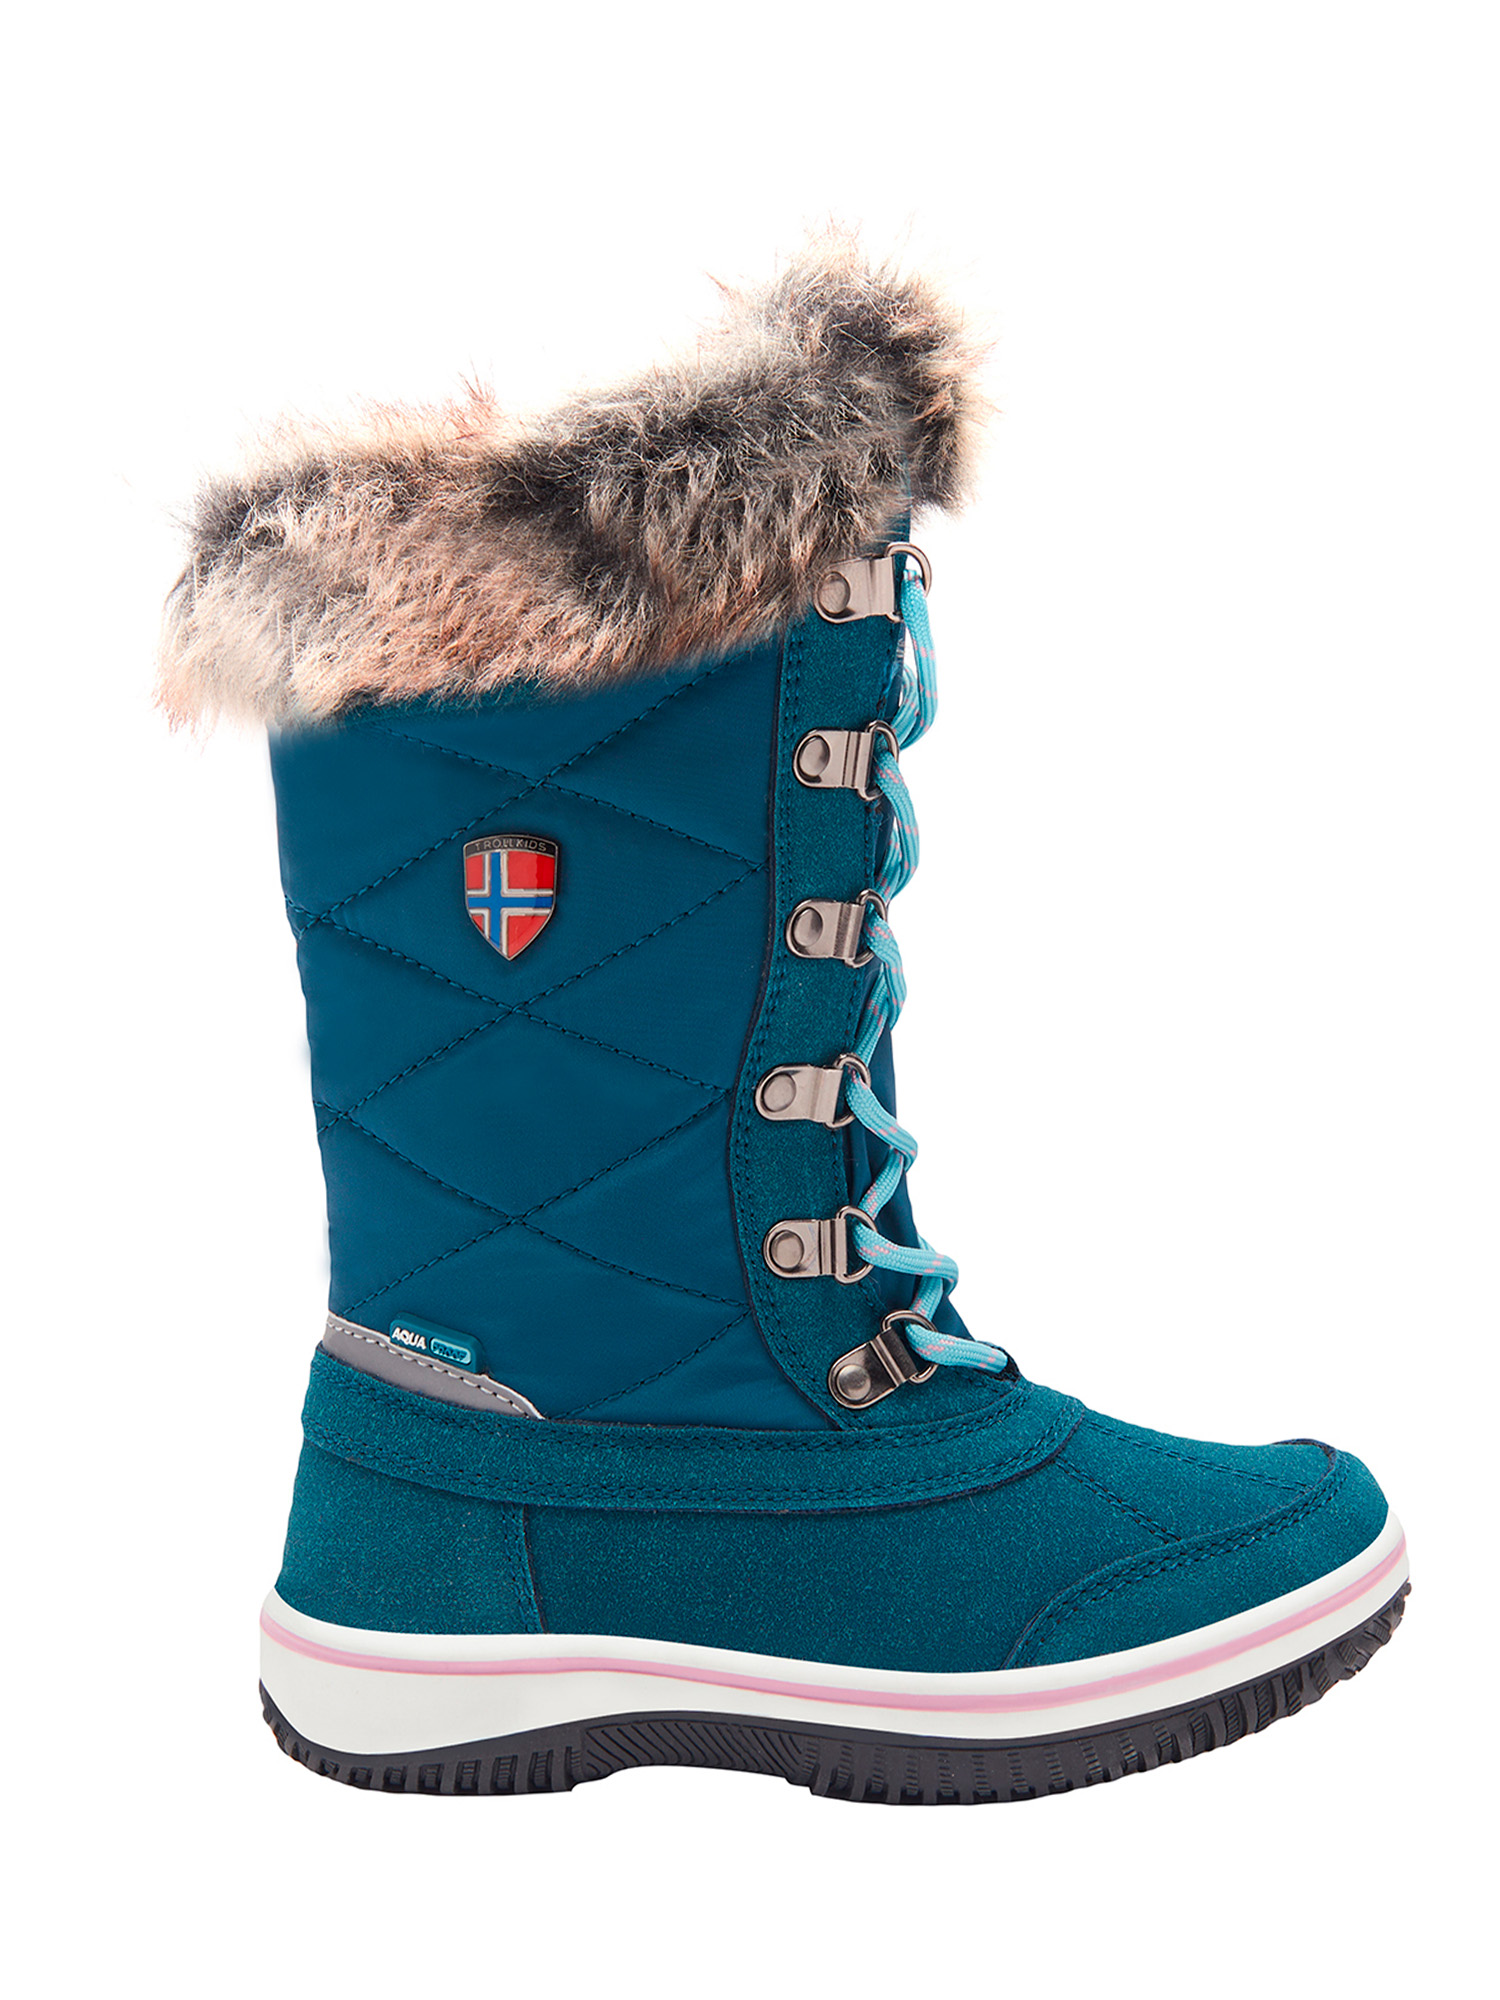 Ботинки Trollkids Girls Holmenkollen Snow Boots, голубой, 30